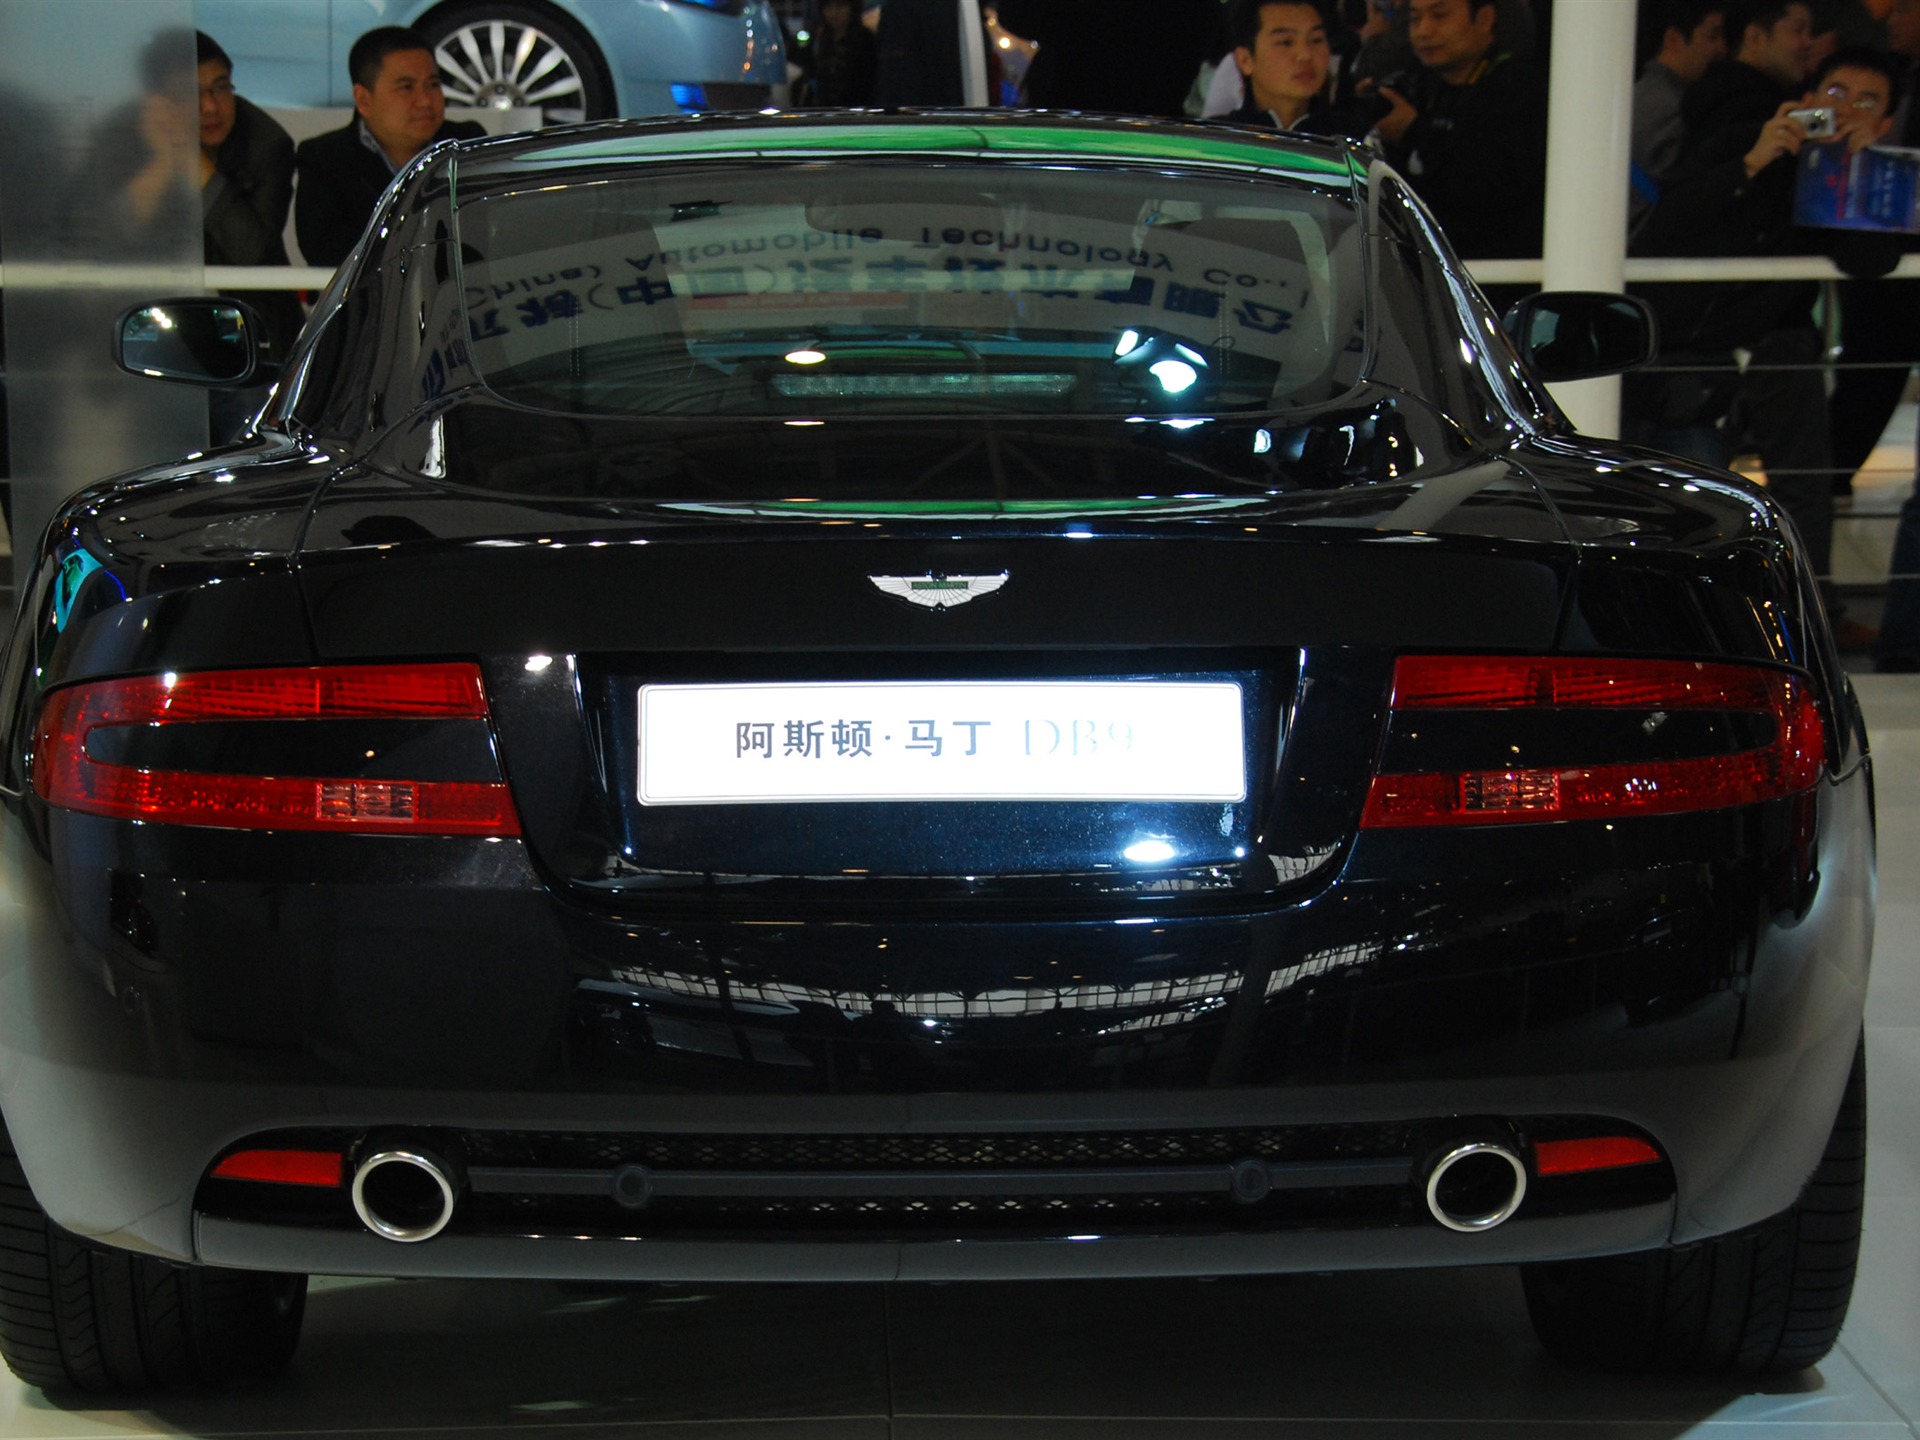 2010 Beijing International Auto Show (1) (z321x123 works) #30 - 1920x1440